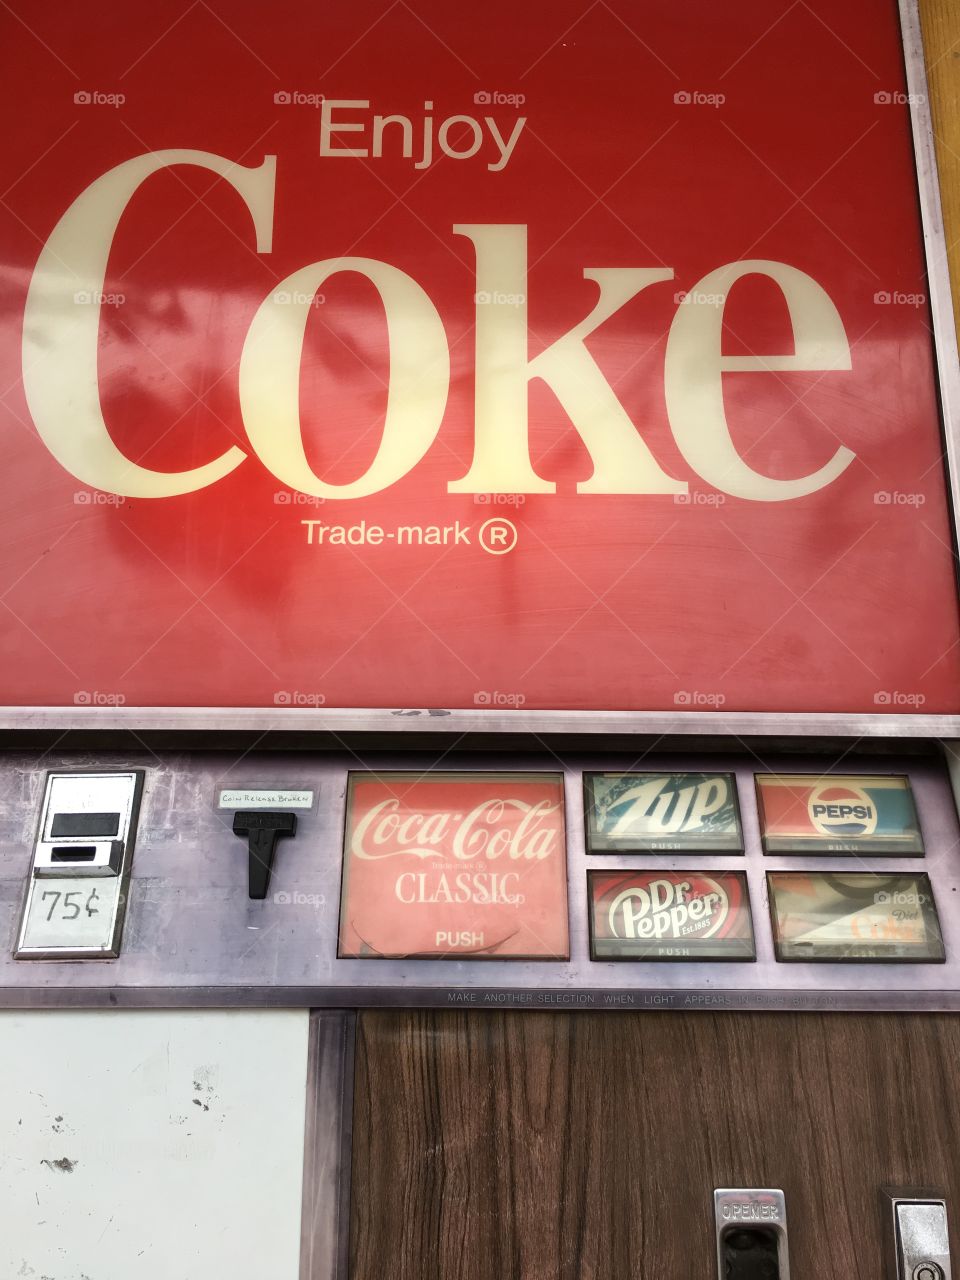 Vintage Coke Machine 